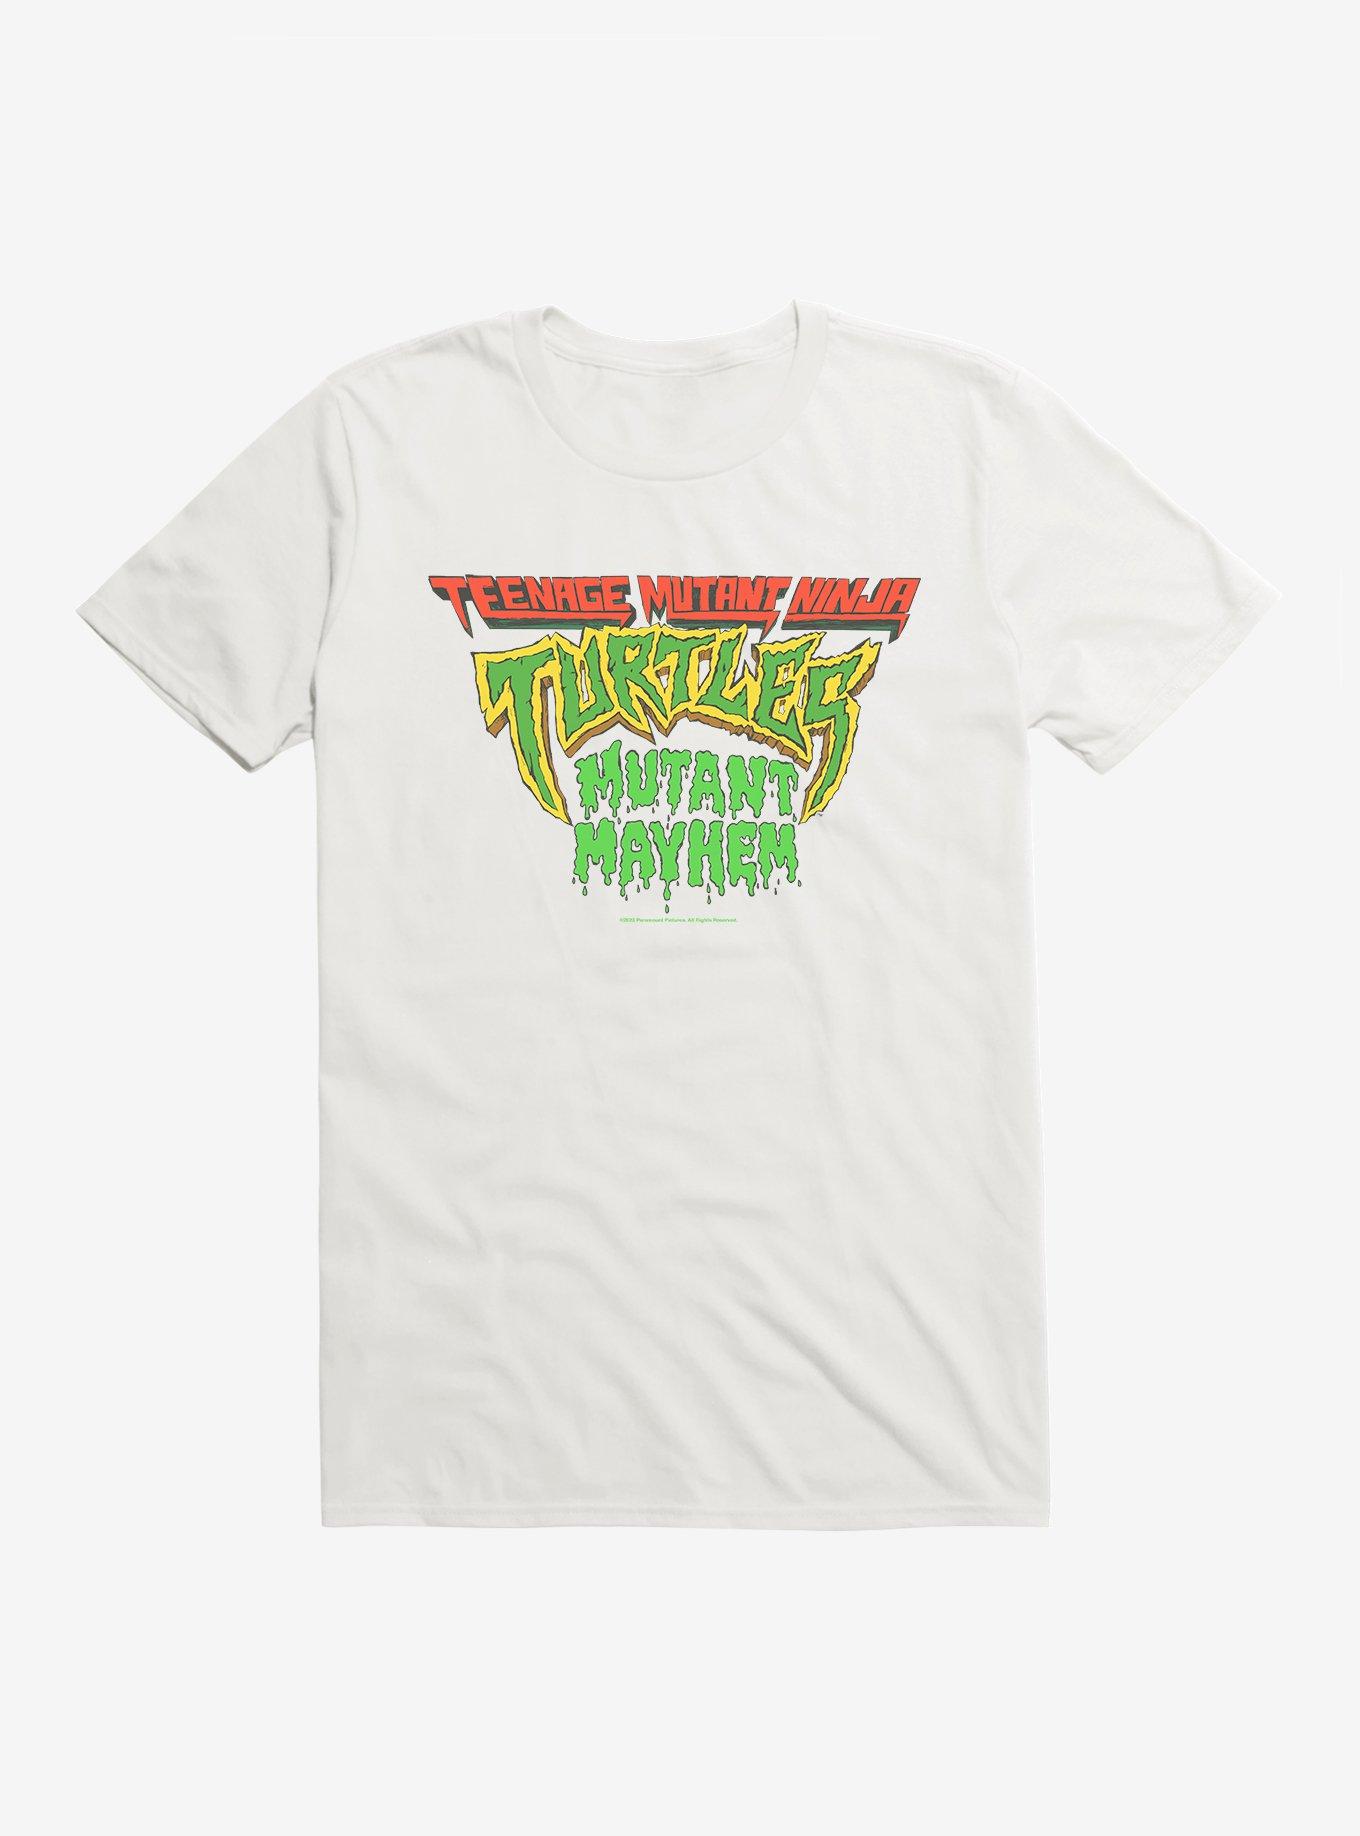 TMNT Teenage Mutant Ninja Turtles Big Face T-Shirt - Green - XL